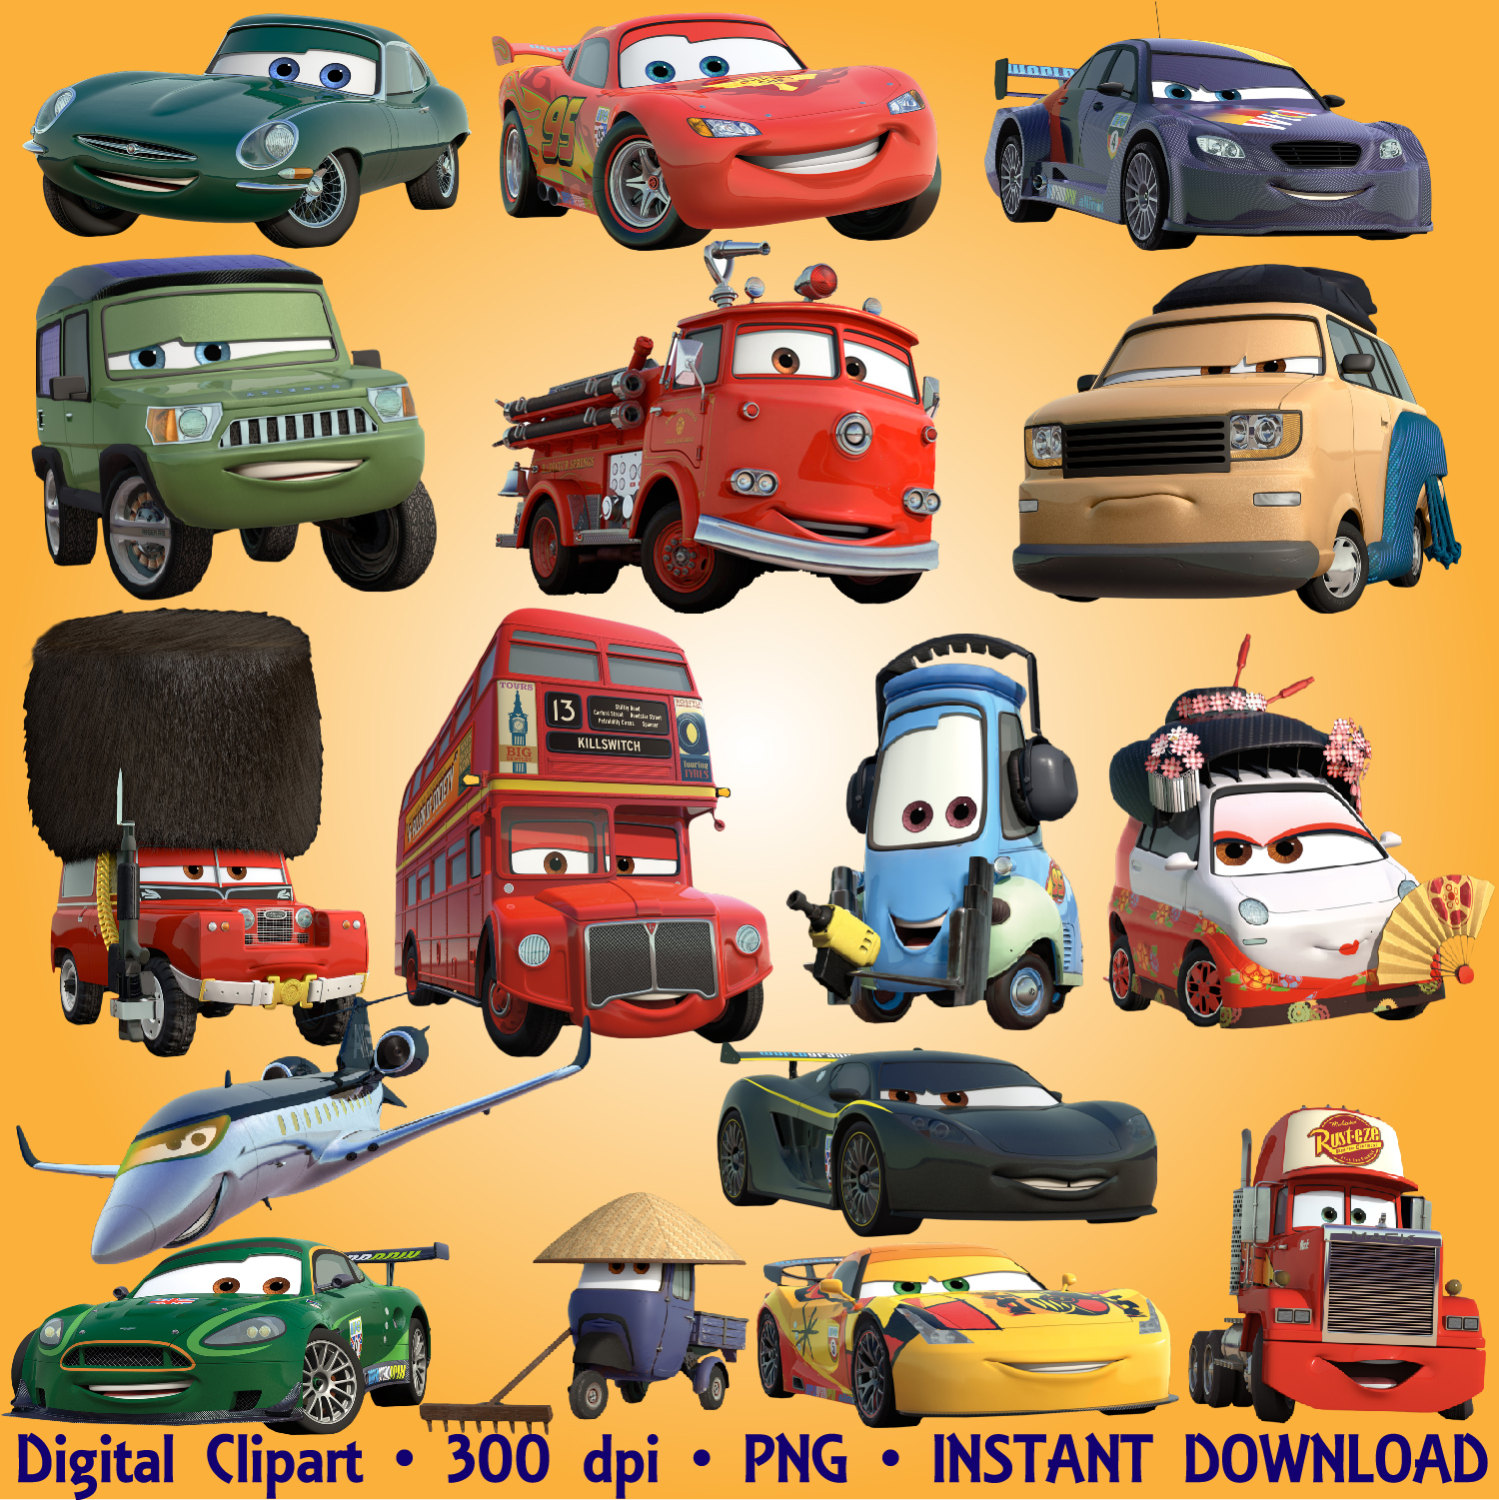 56 Png Digital Graphic Disney Cars 2 Clip Art Scrapbooking Invitations